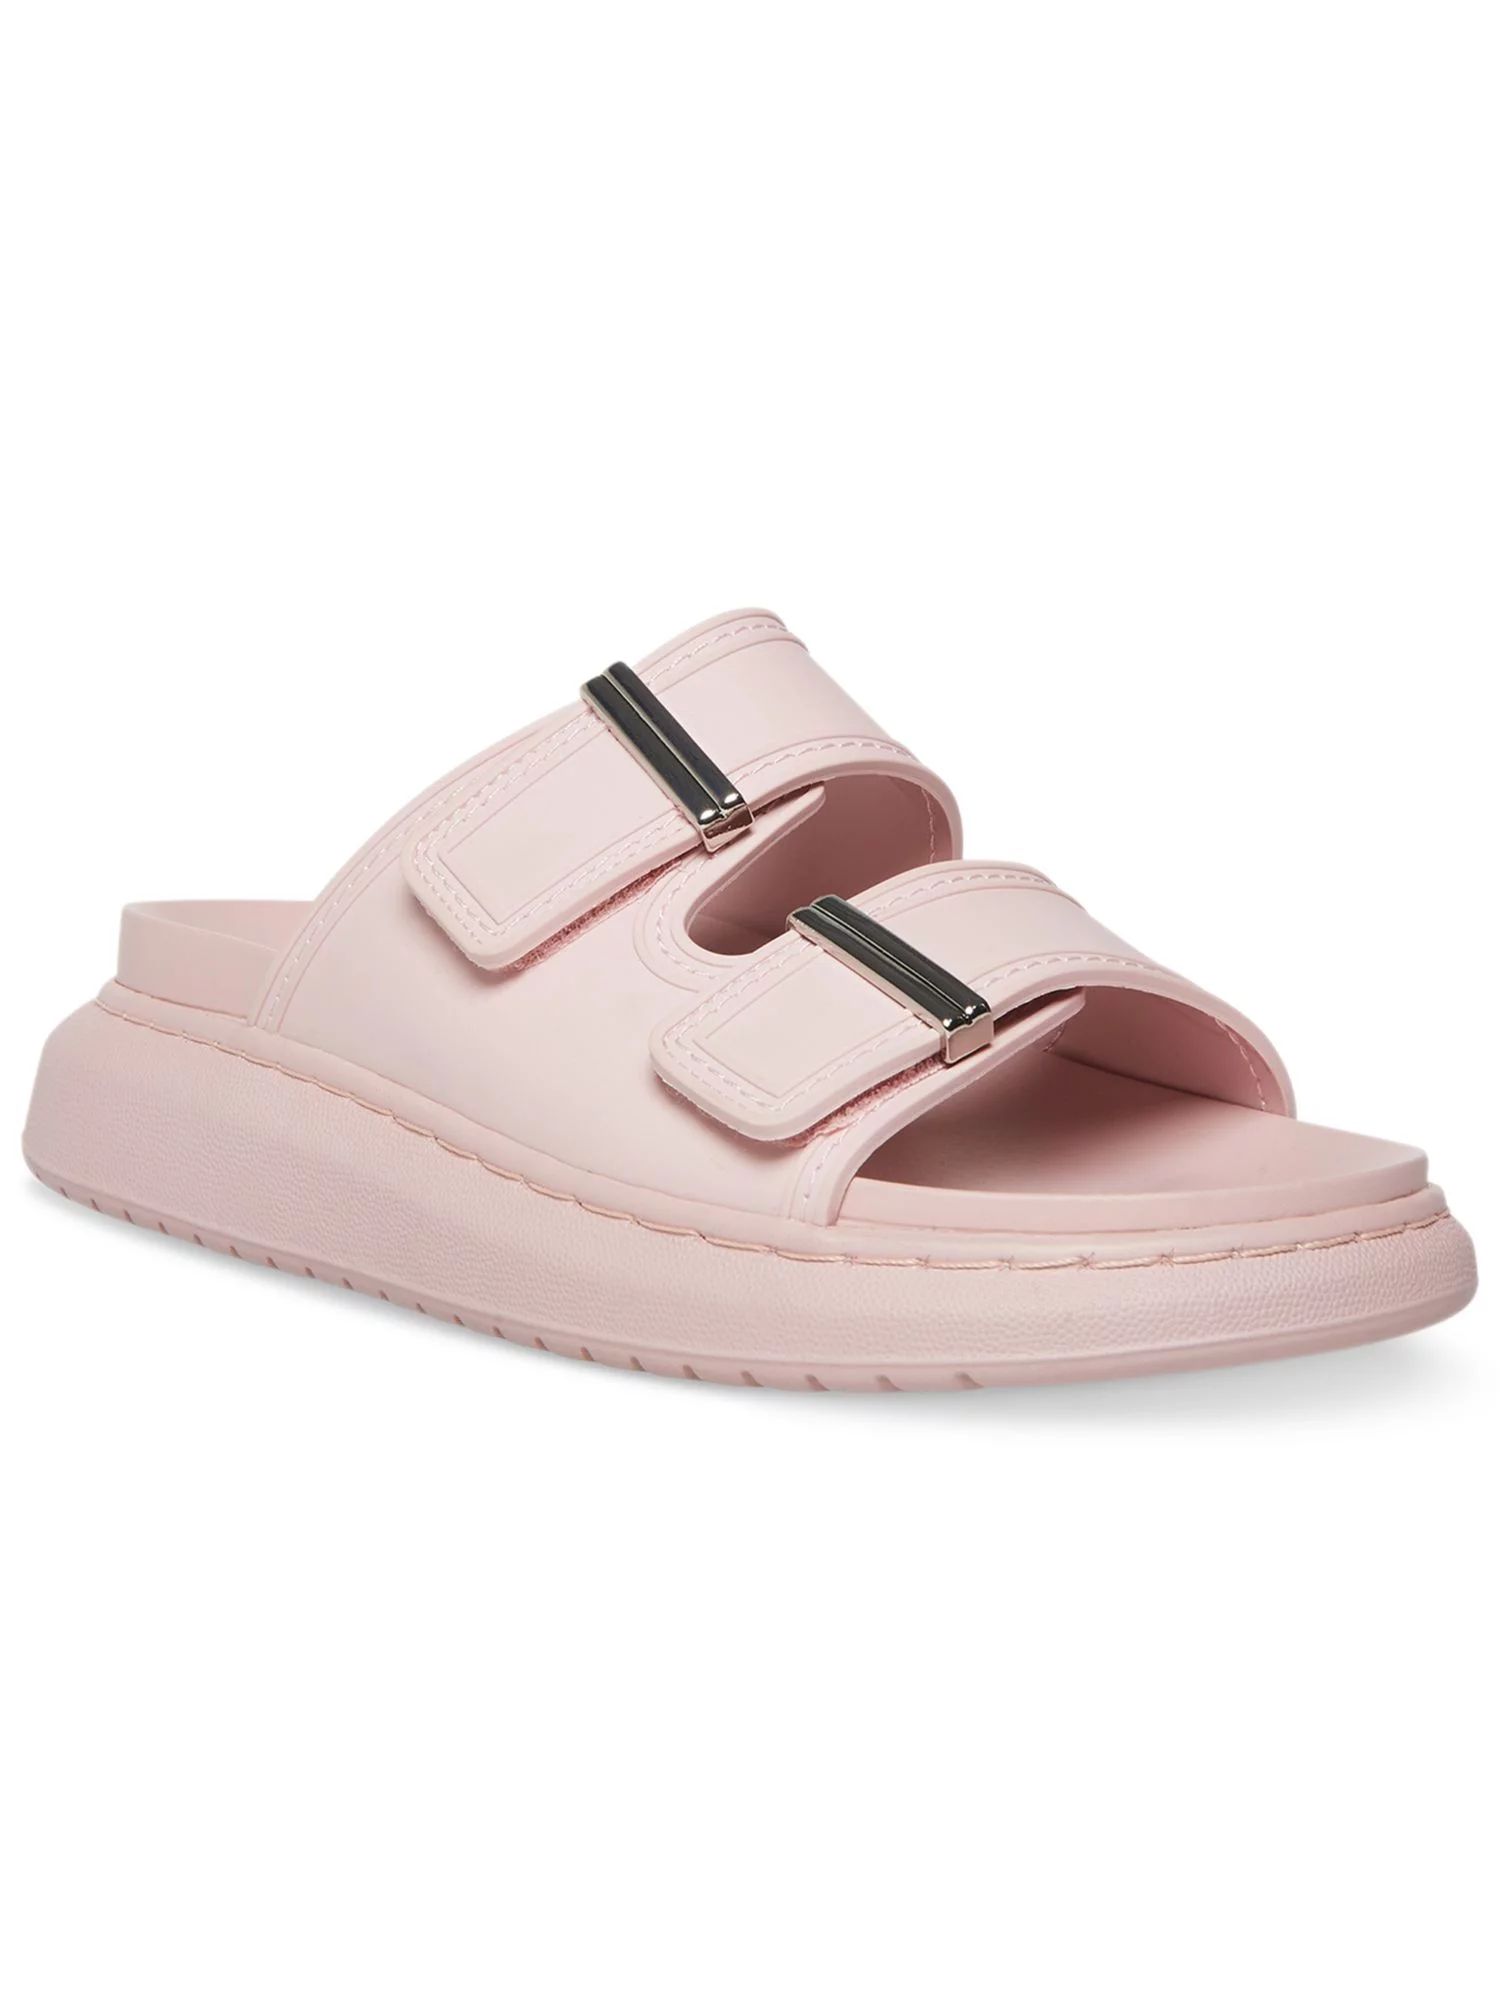 MADDEN GIRL Womens Pink Adjustable Strap Comfort Kingsley Round Toe Platform Slip On Slide Sandal... | Walmart (US)